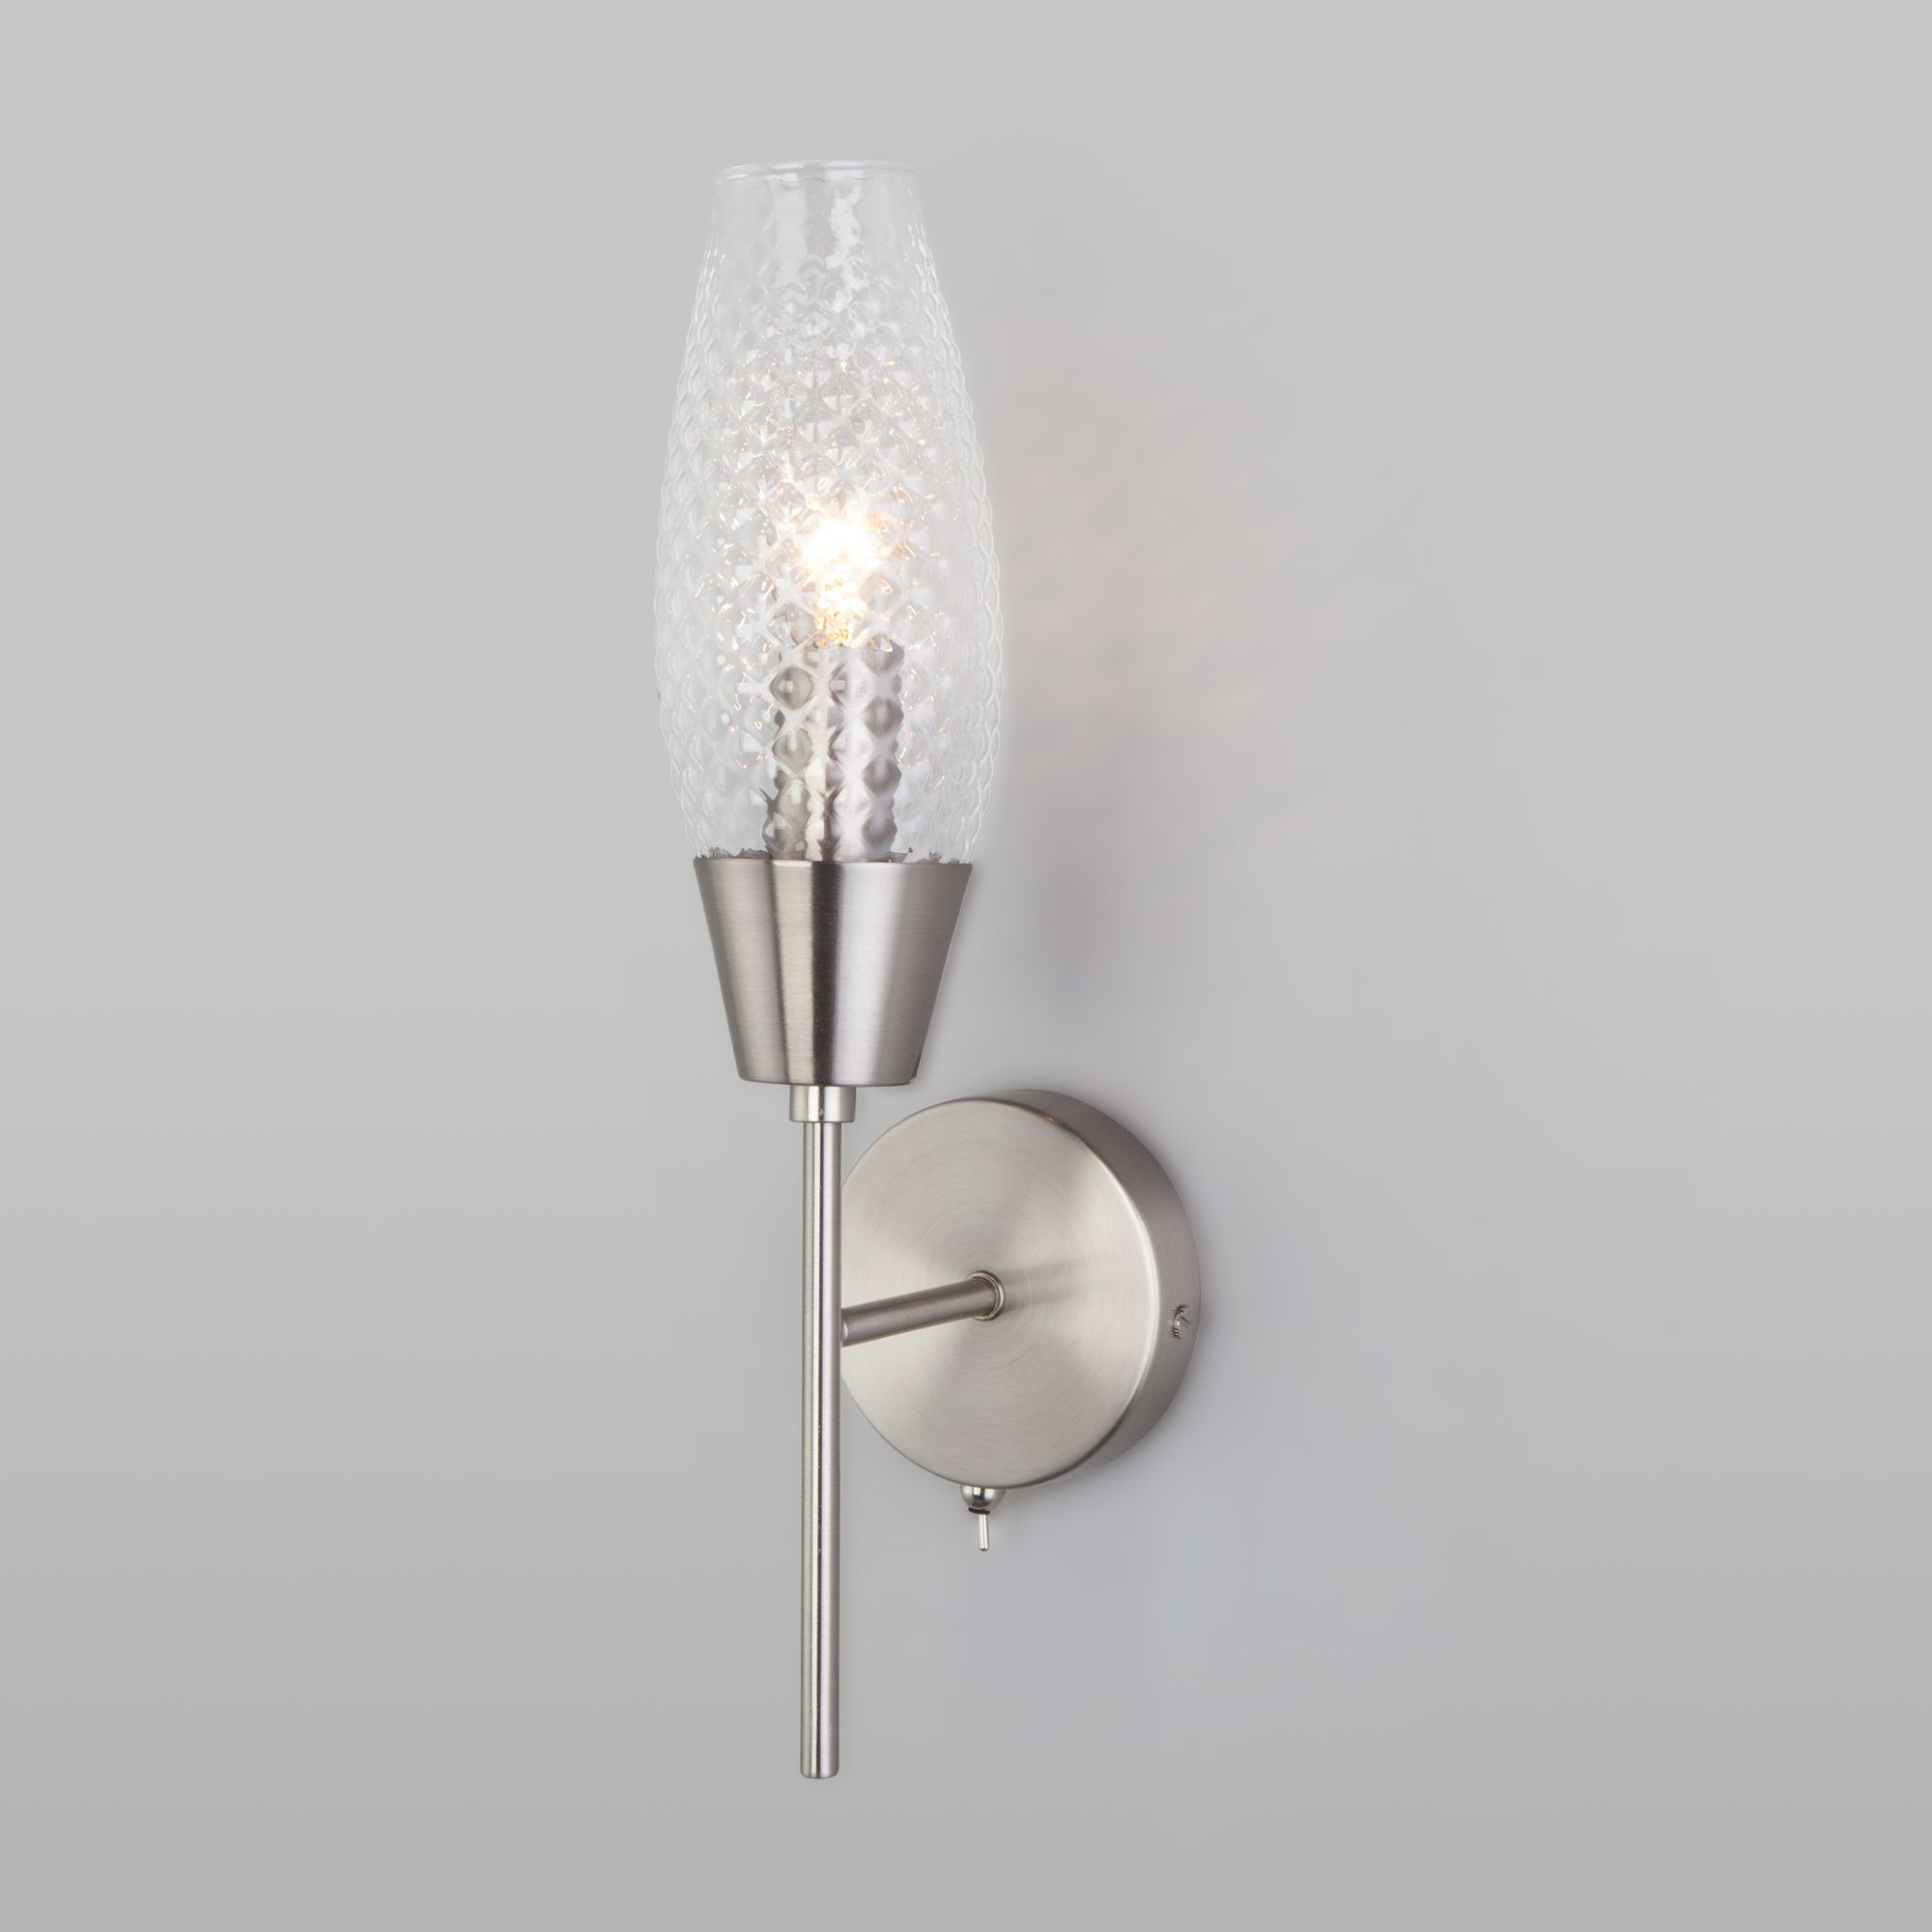 Настенный светильник со стеклянным плафоном Eurosvet Thalia 60140/1 сатин-никель. Фото 1